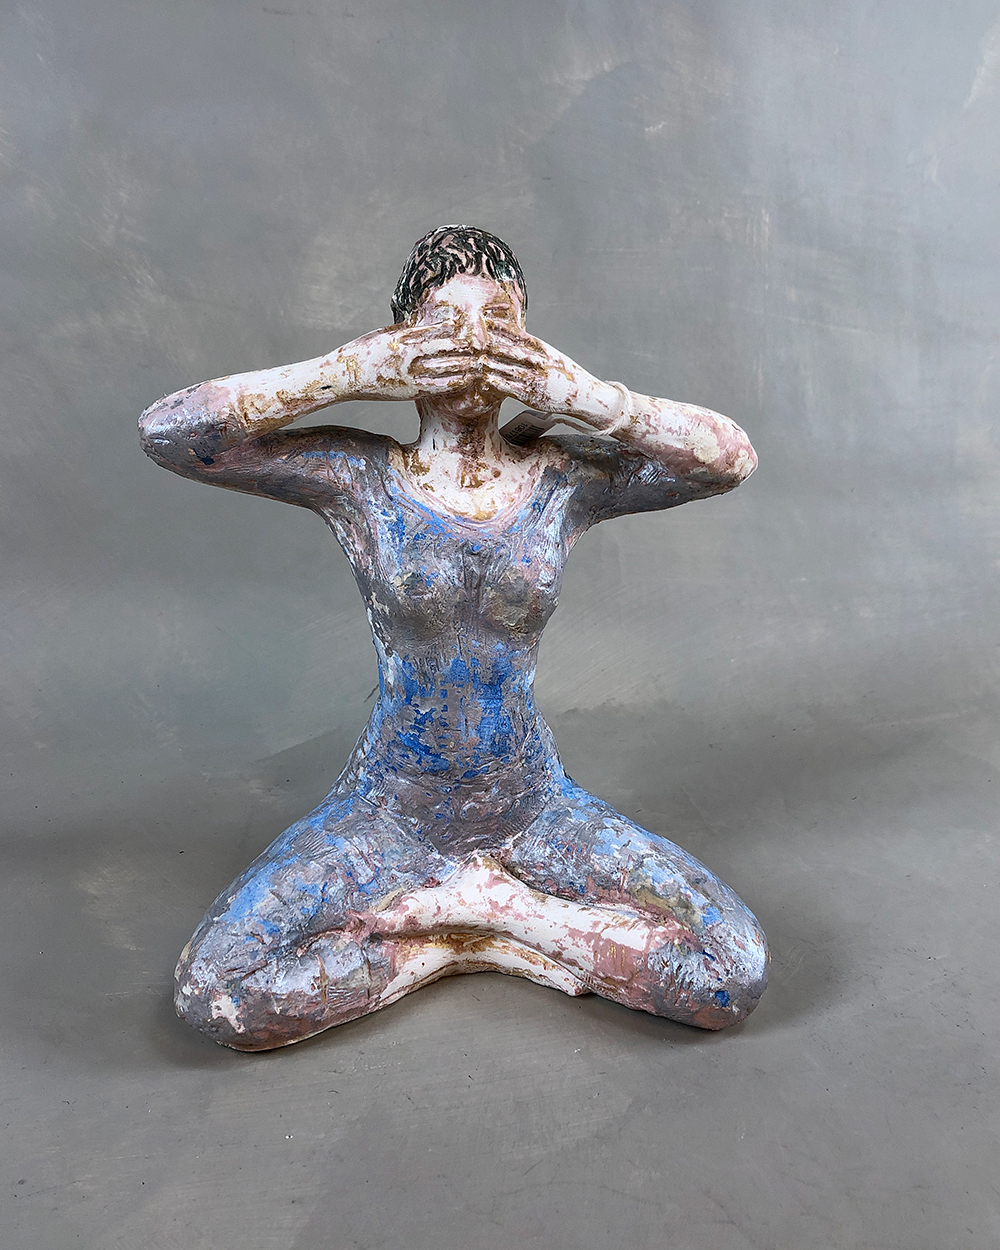 Due, Nina - Skulptur "Indre rom"